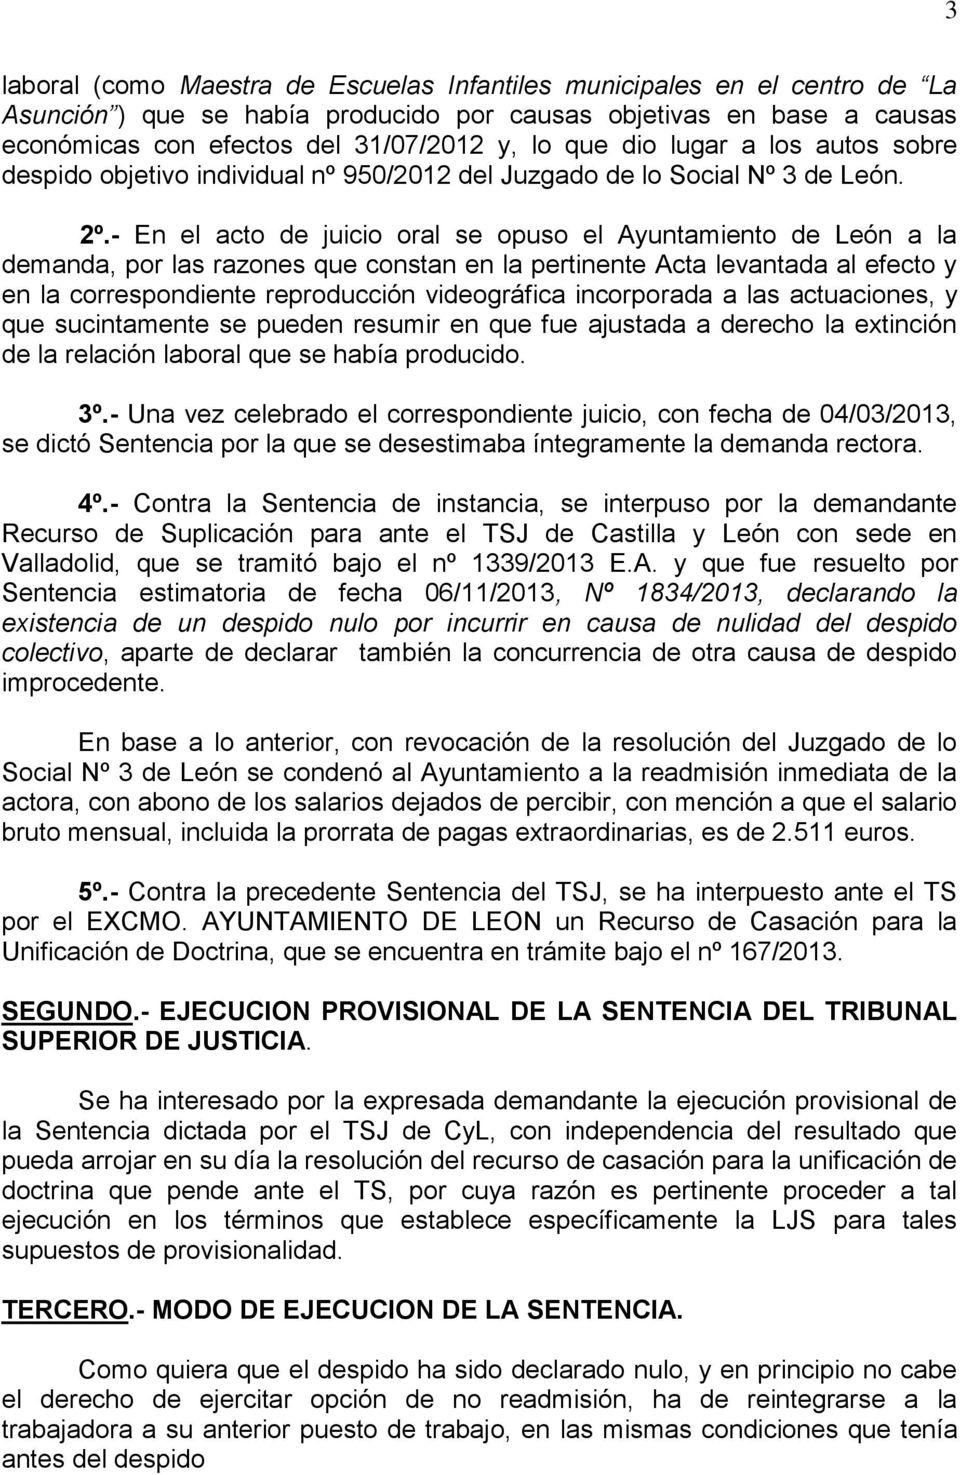 - En el acto de juicio oral se opuso el Ayuntamiento de León a la demanda, por las razones que constan en la pertinente Acta levantada al efecto y en la correspondiente reproducción videográfica